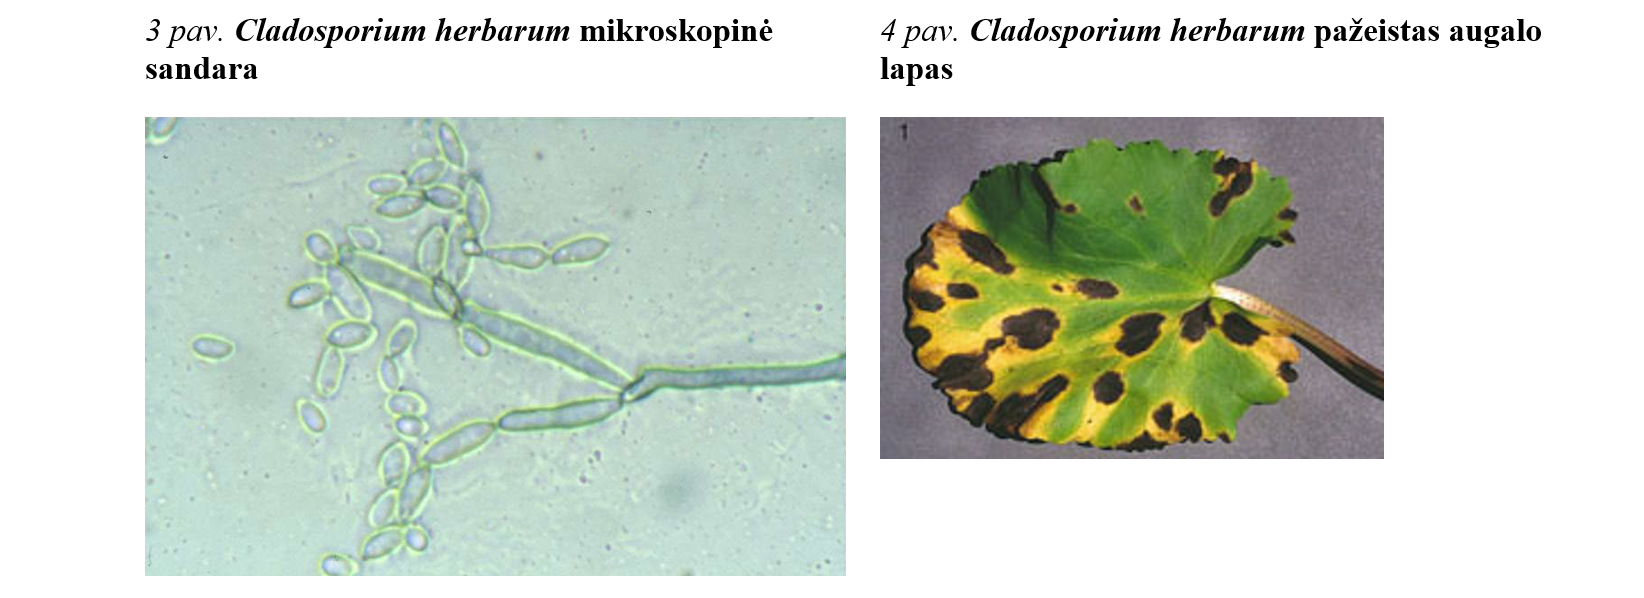 Cladosporium herbarum